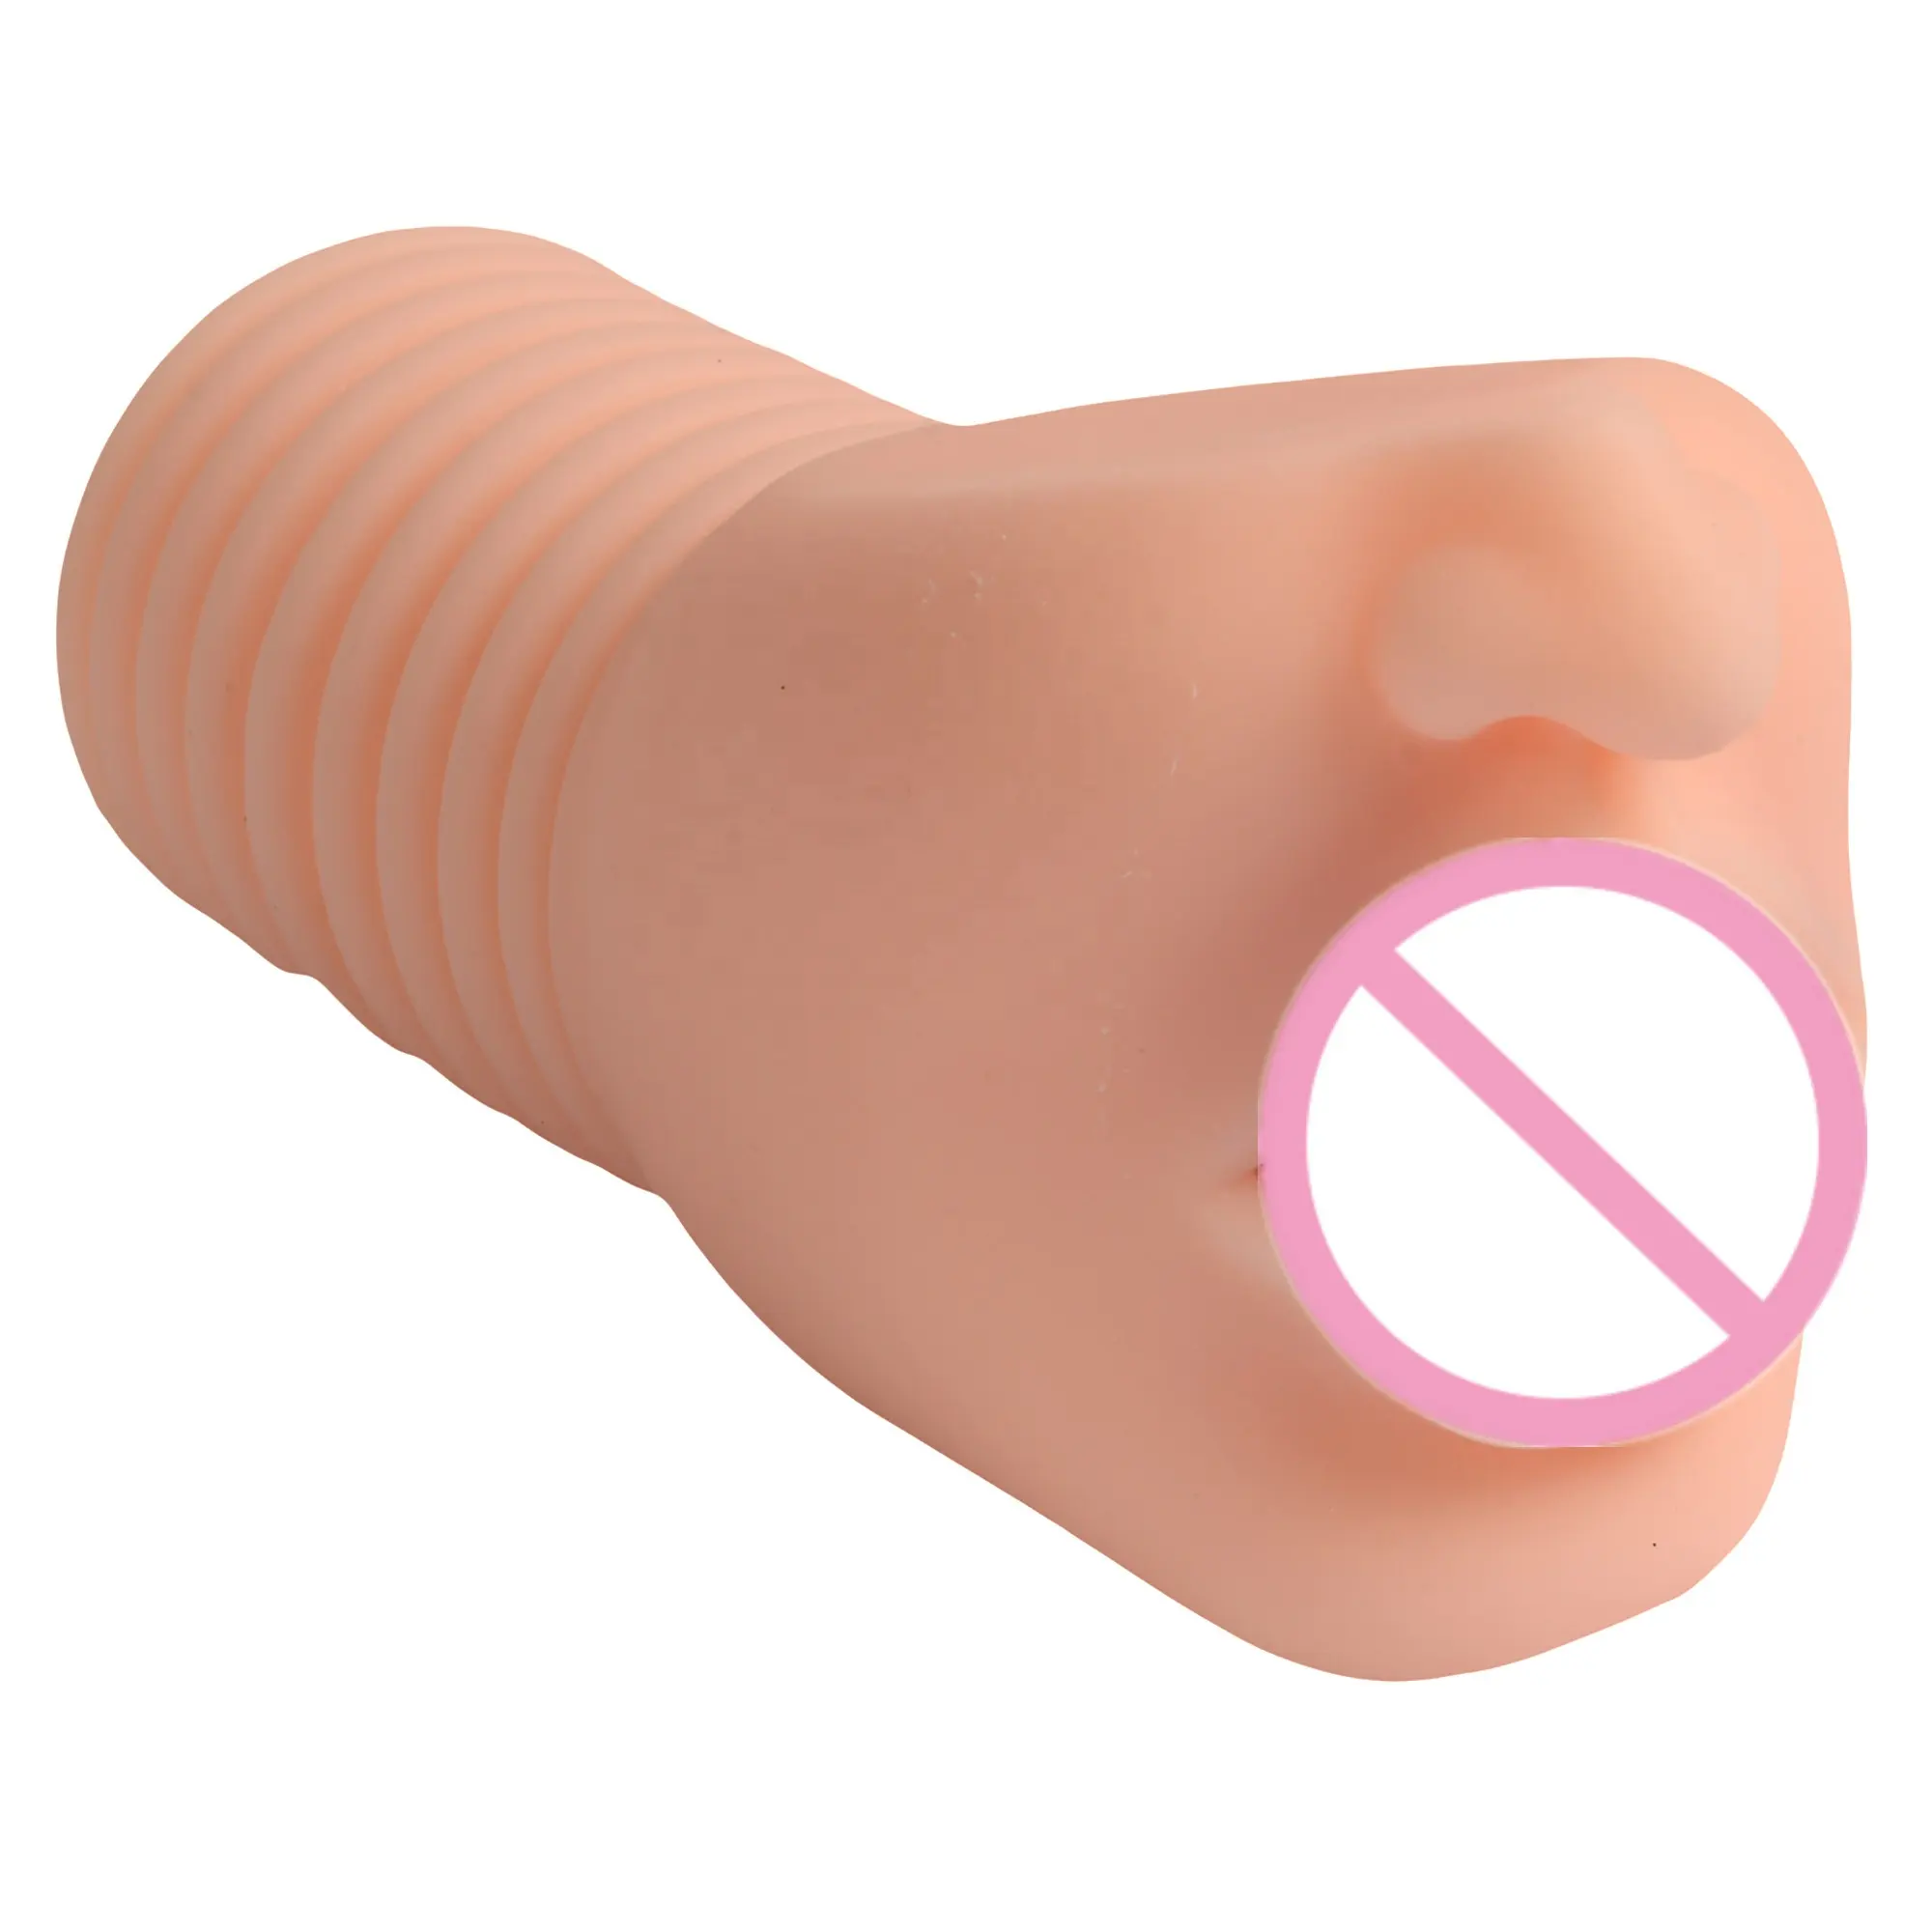 Hochwertige Sexspielzeug für Erwachsene Realistische Haut Vaginal Masturbation Muschi Sex Tasche Muschi Sex Produkte Männliche Mastur bator Tasse